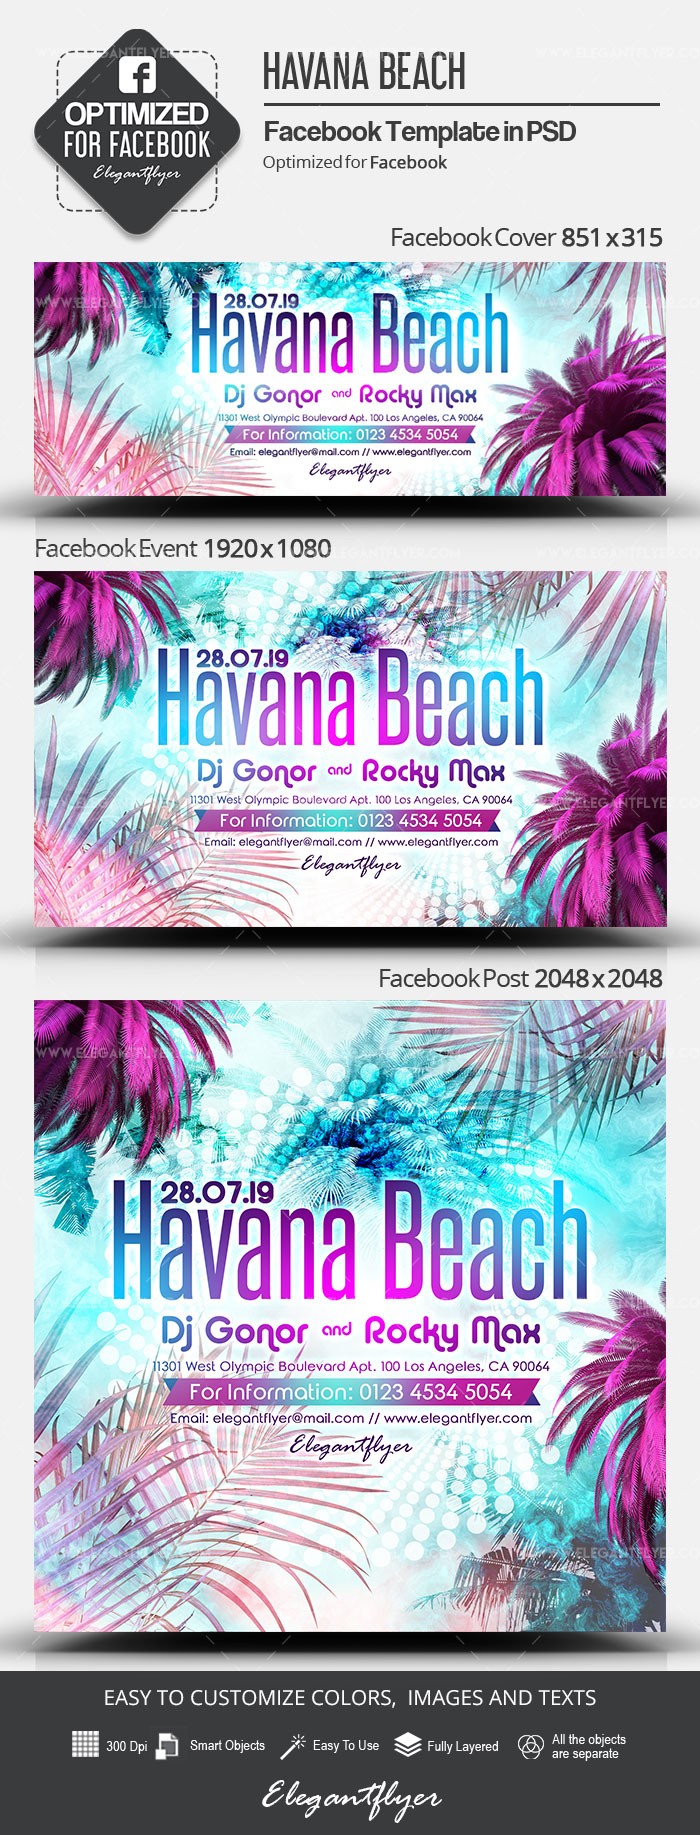 哈瓦那海滩Facebook by ElegantFlyer